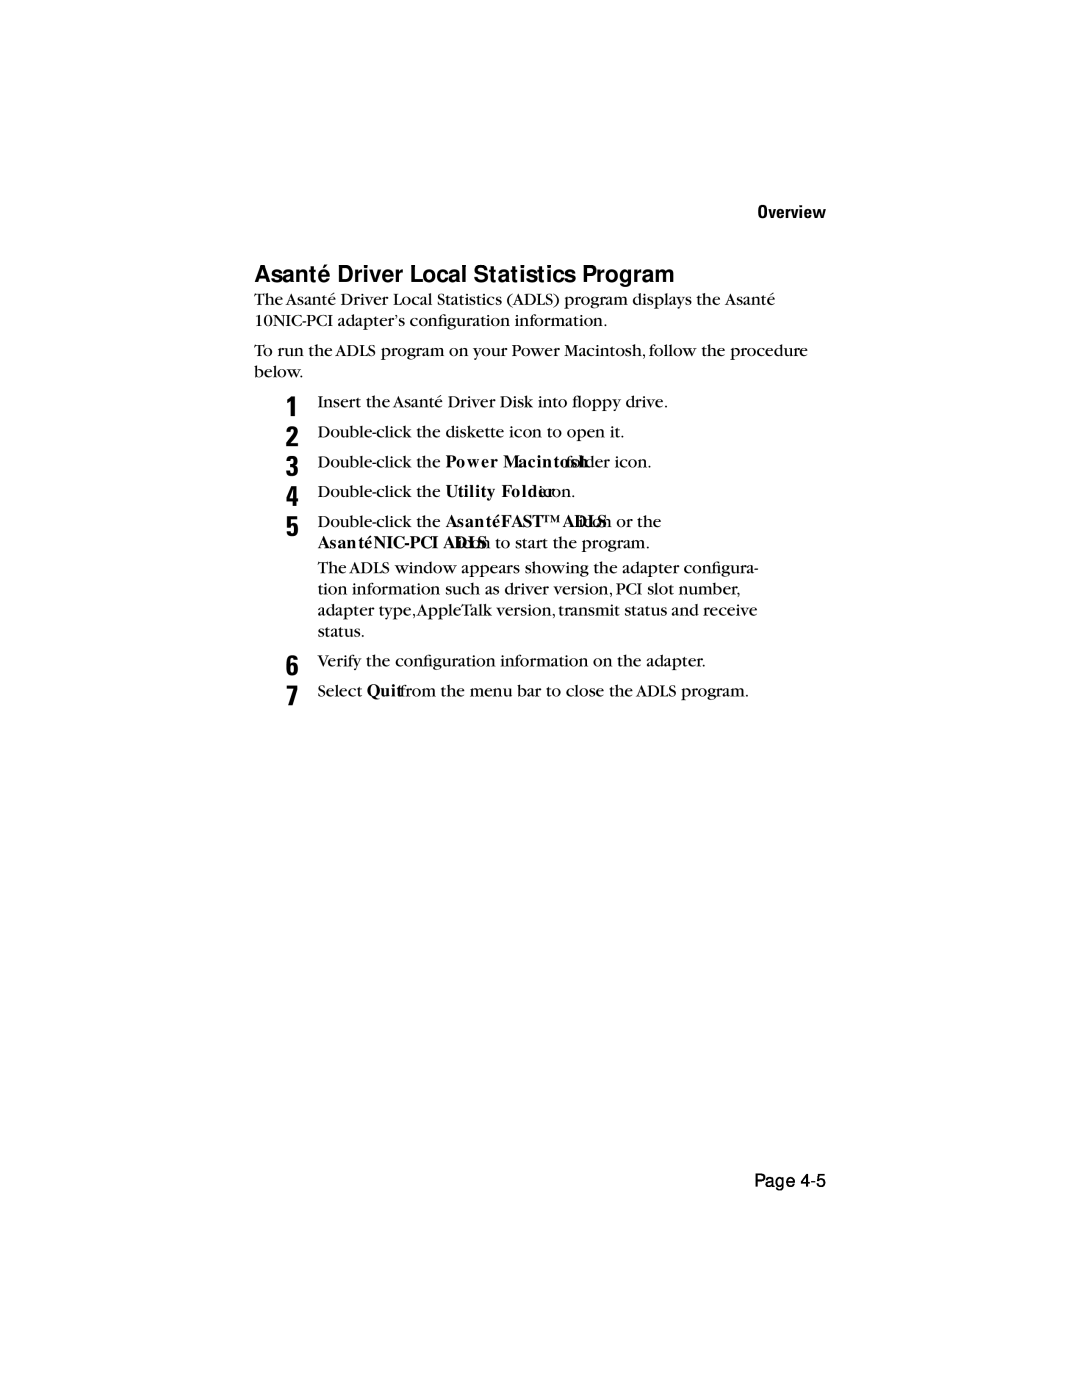 Asante Technologies 10NIC-PCITM manual Asanté Driver Local Statistics Program, Overview 